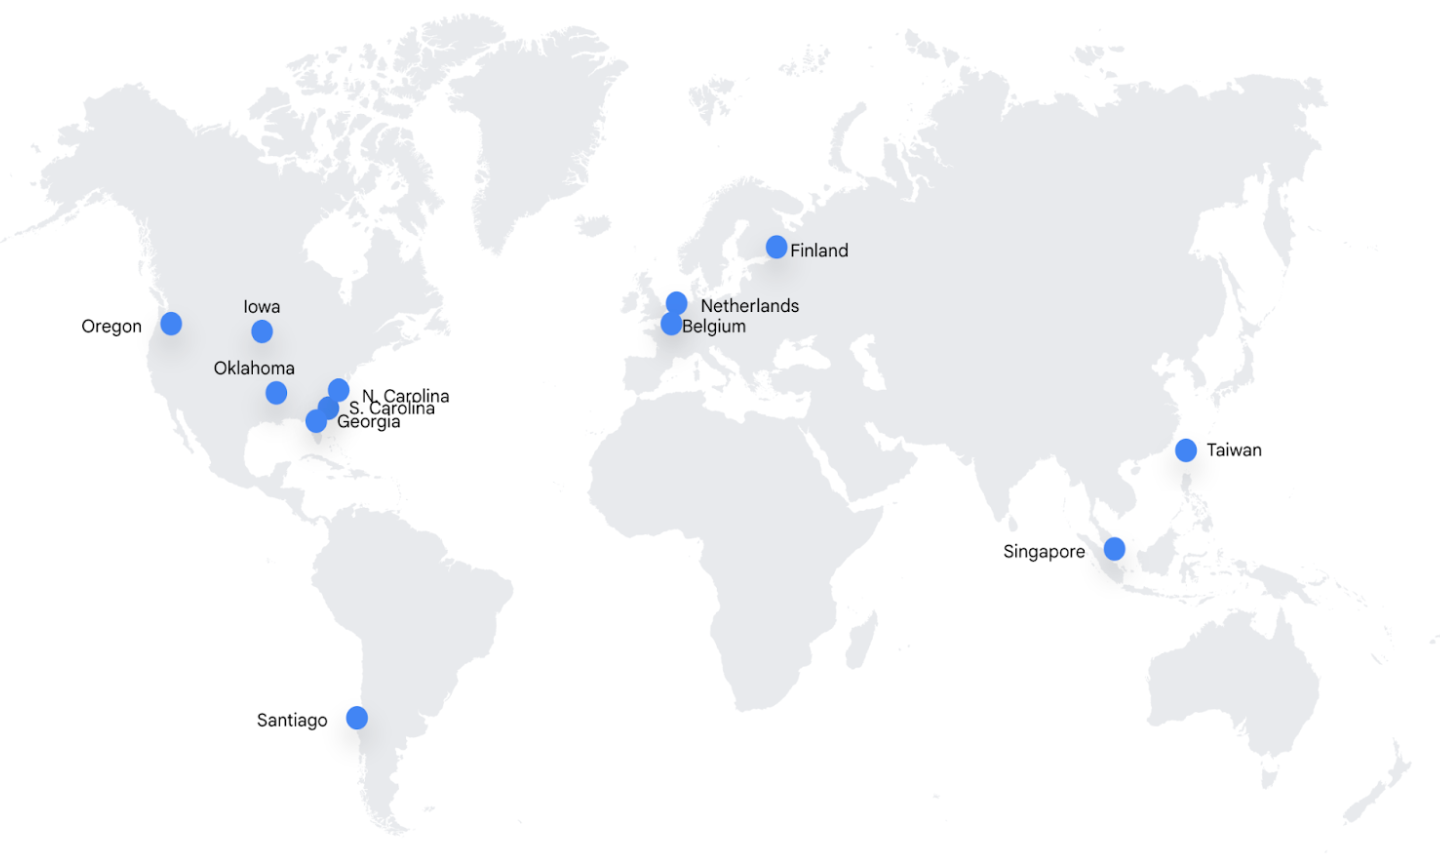 Mappa del mondo che mostra le sedi dei data center
come punti blu